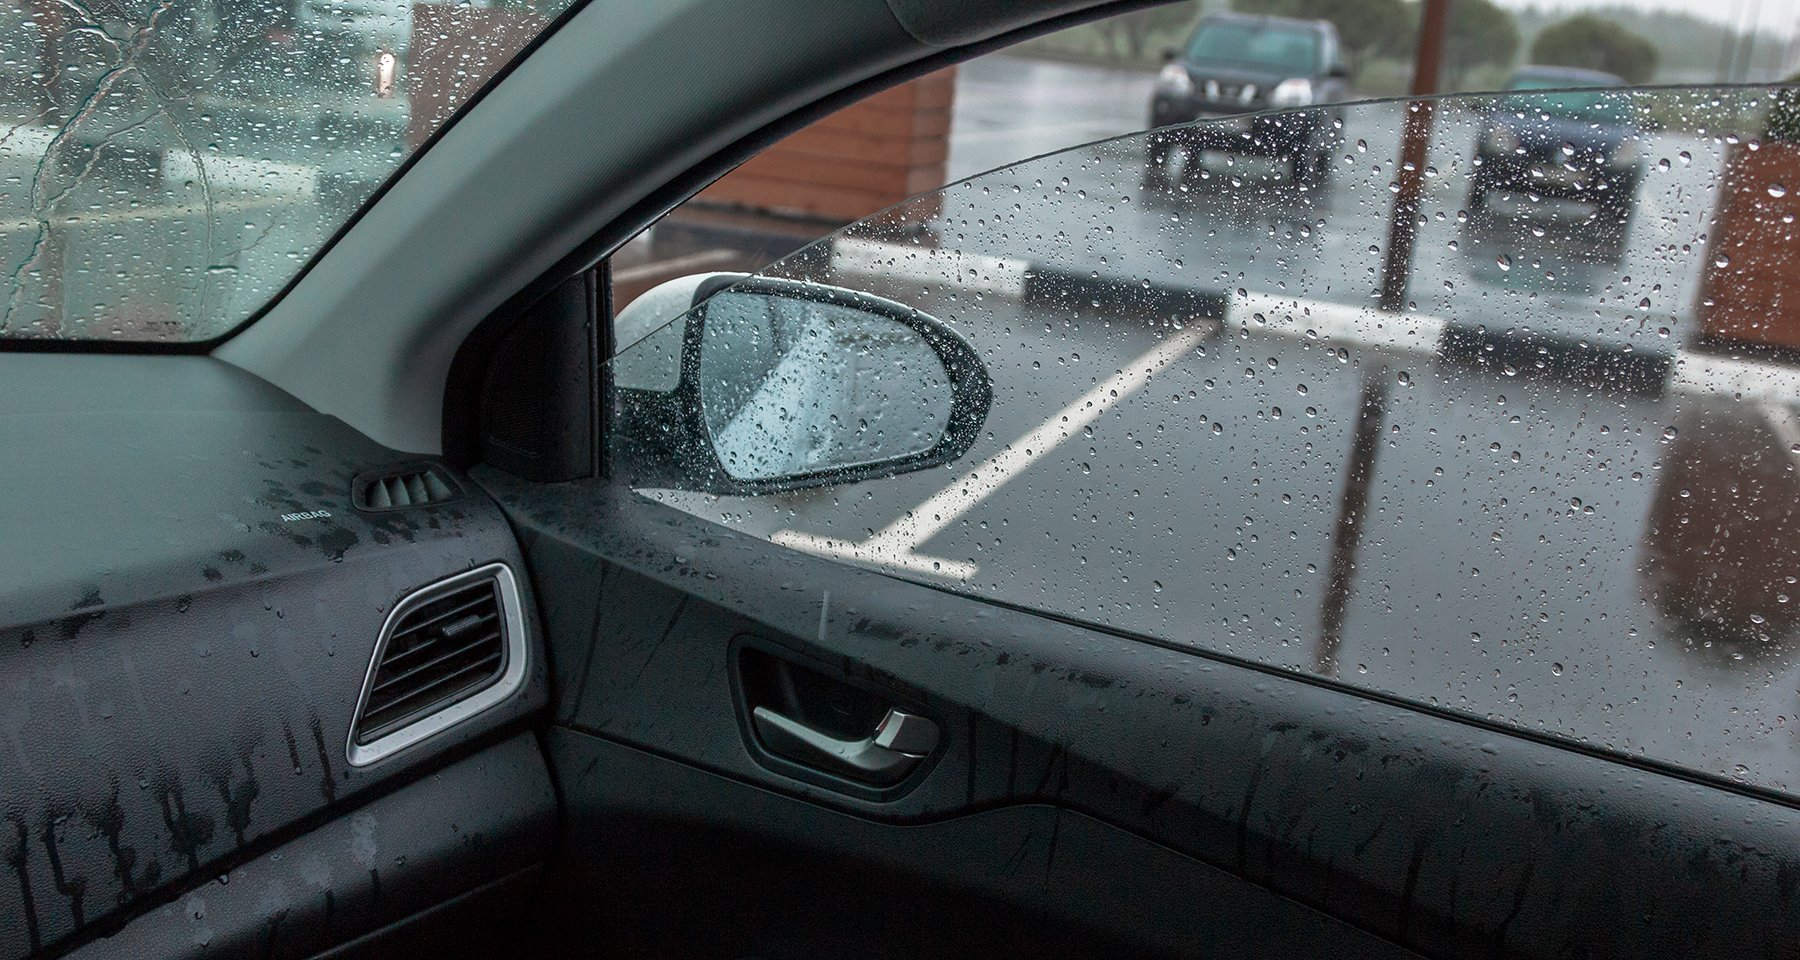 Дождь затопил машину: что делать?